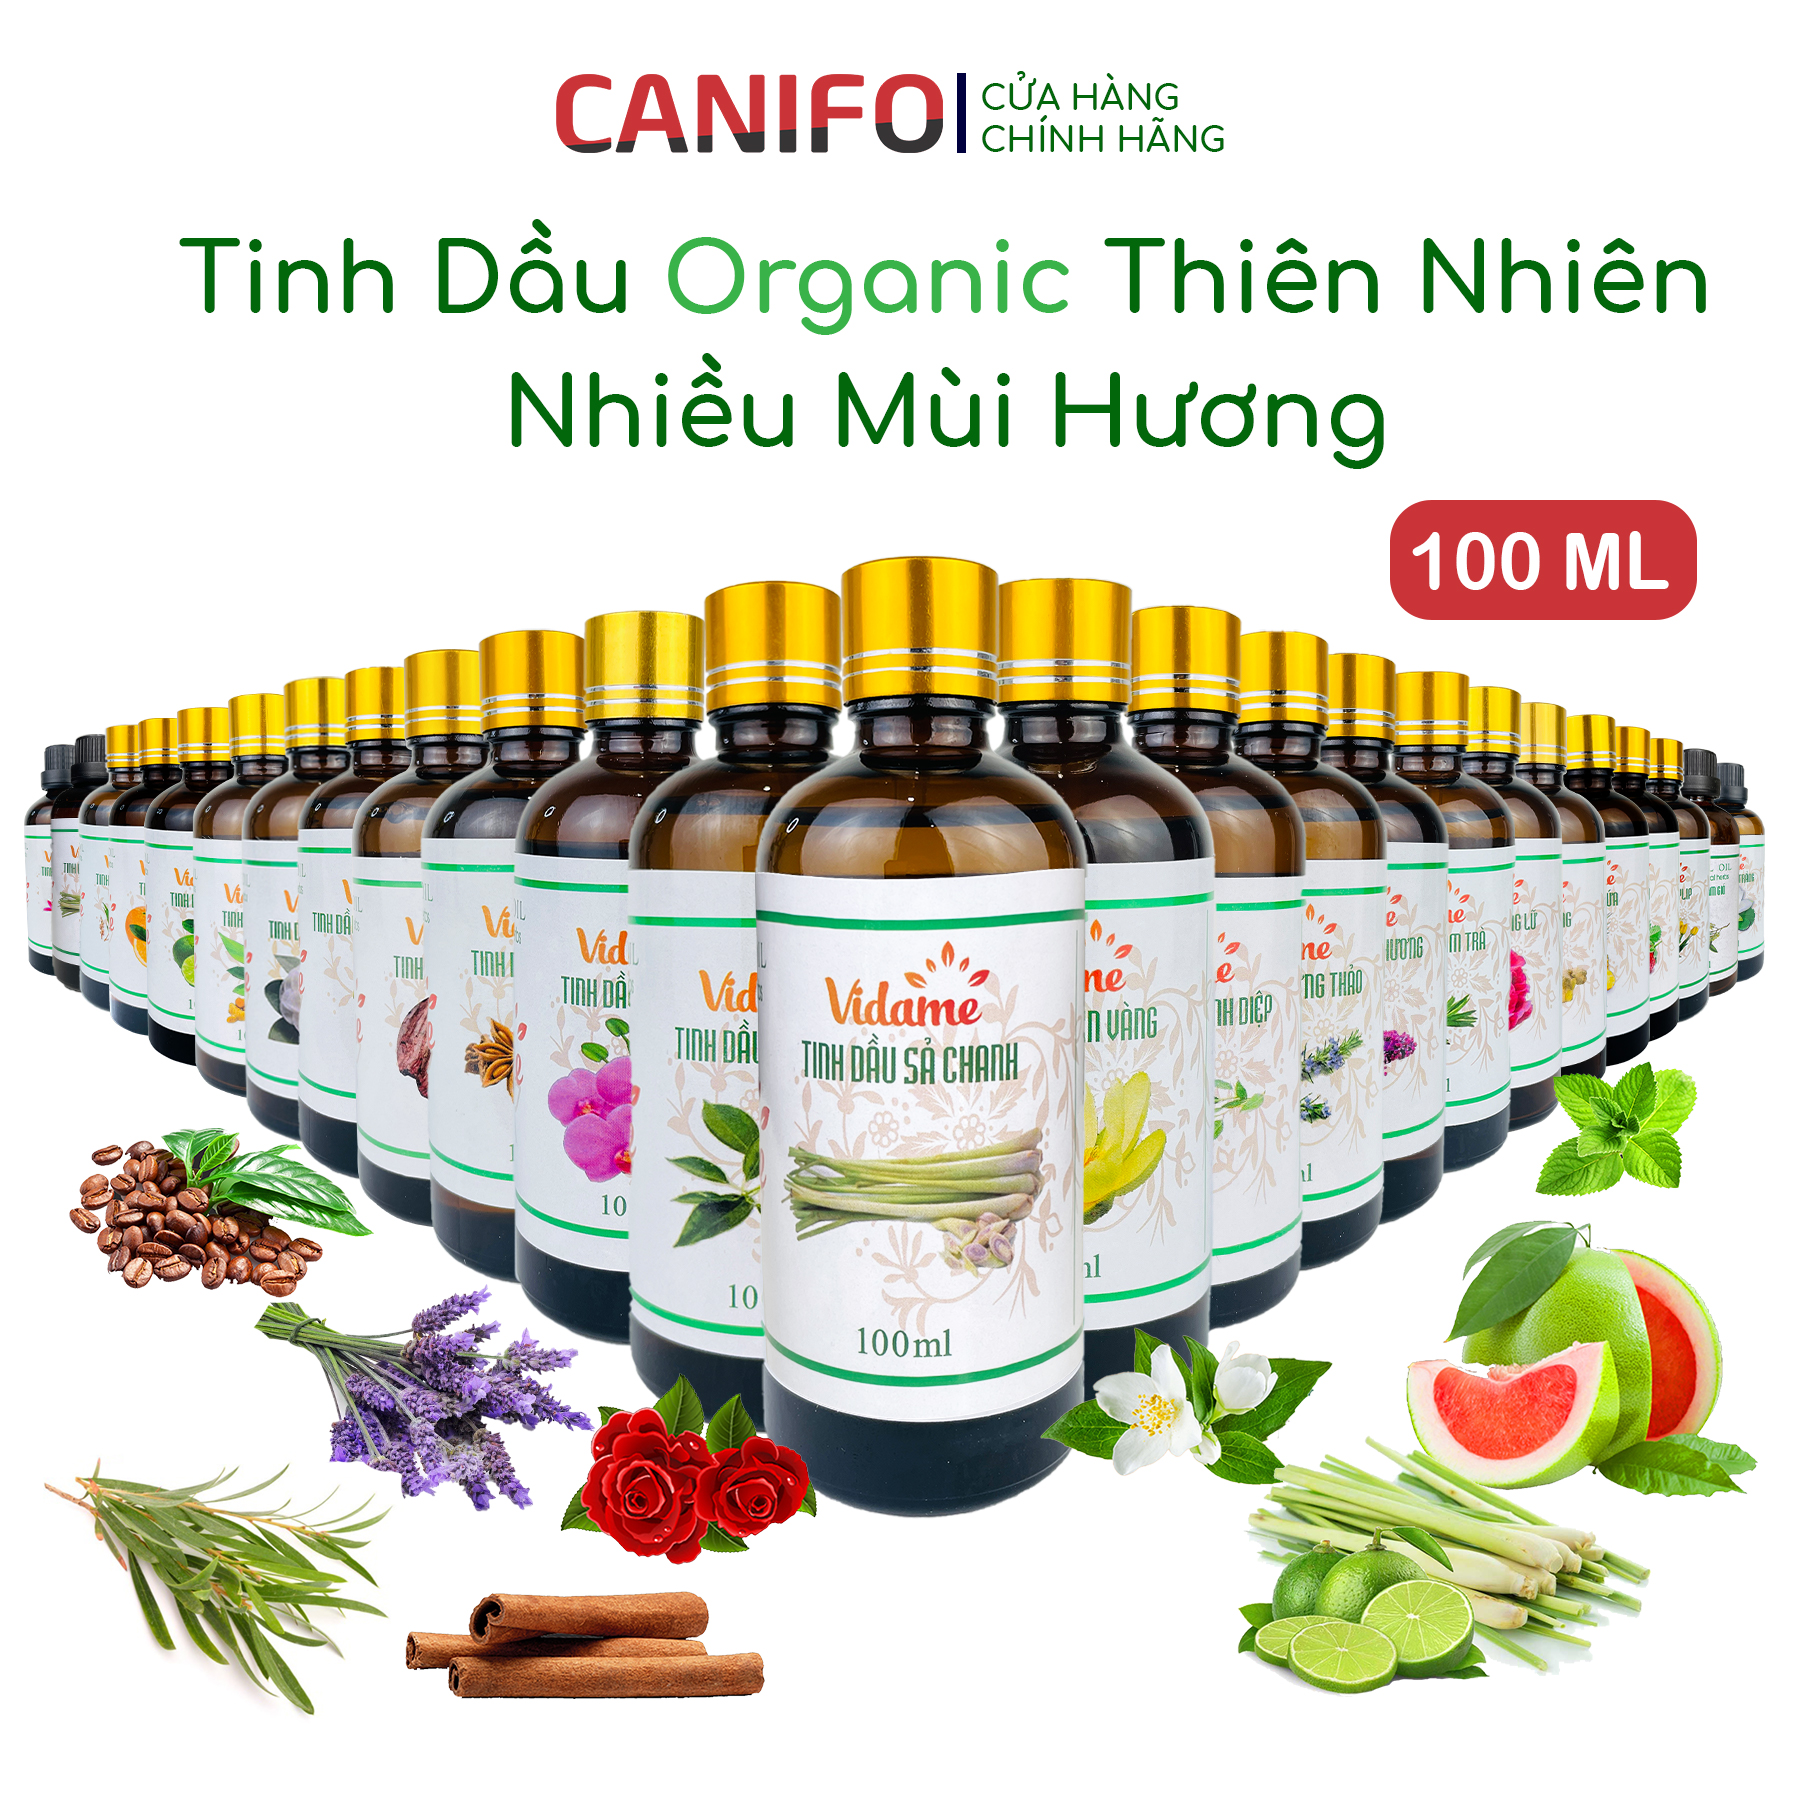 Tinh Dầu Thiên Nhiên 100ML CANIFO Organic, HÀNG CHÍNH HÃNGTinh dầu thơm